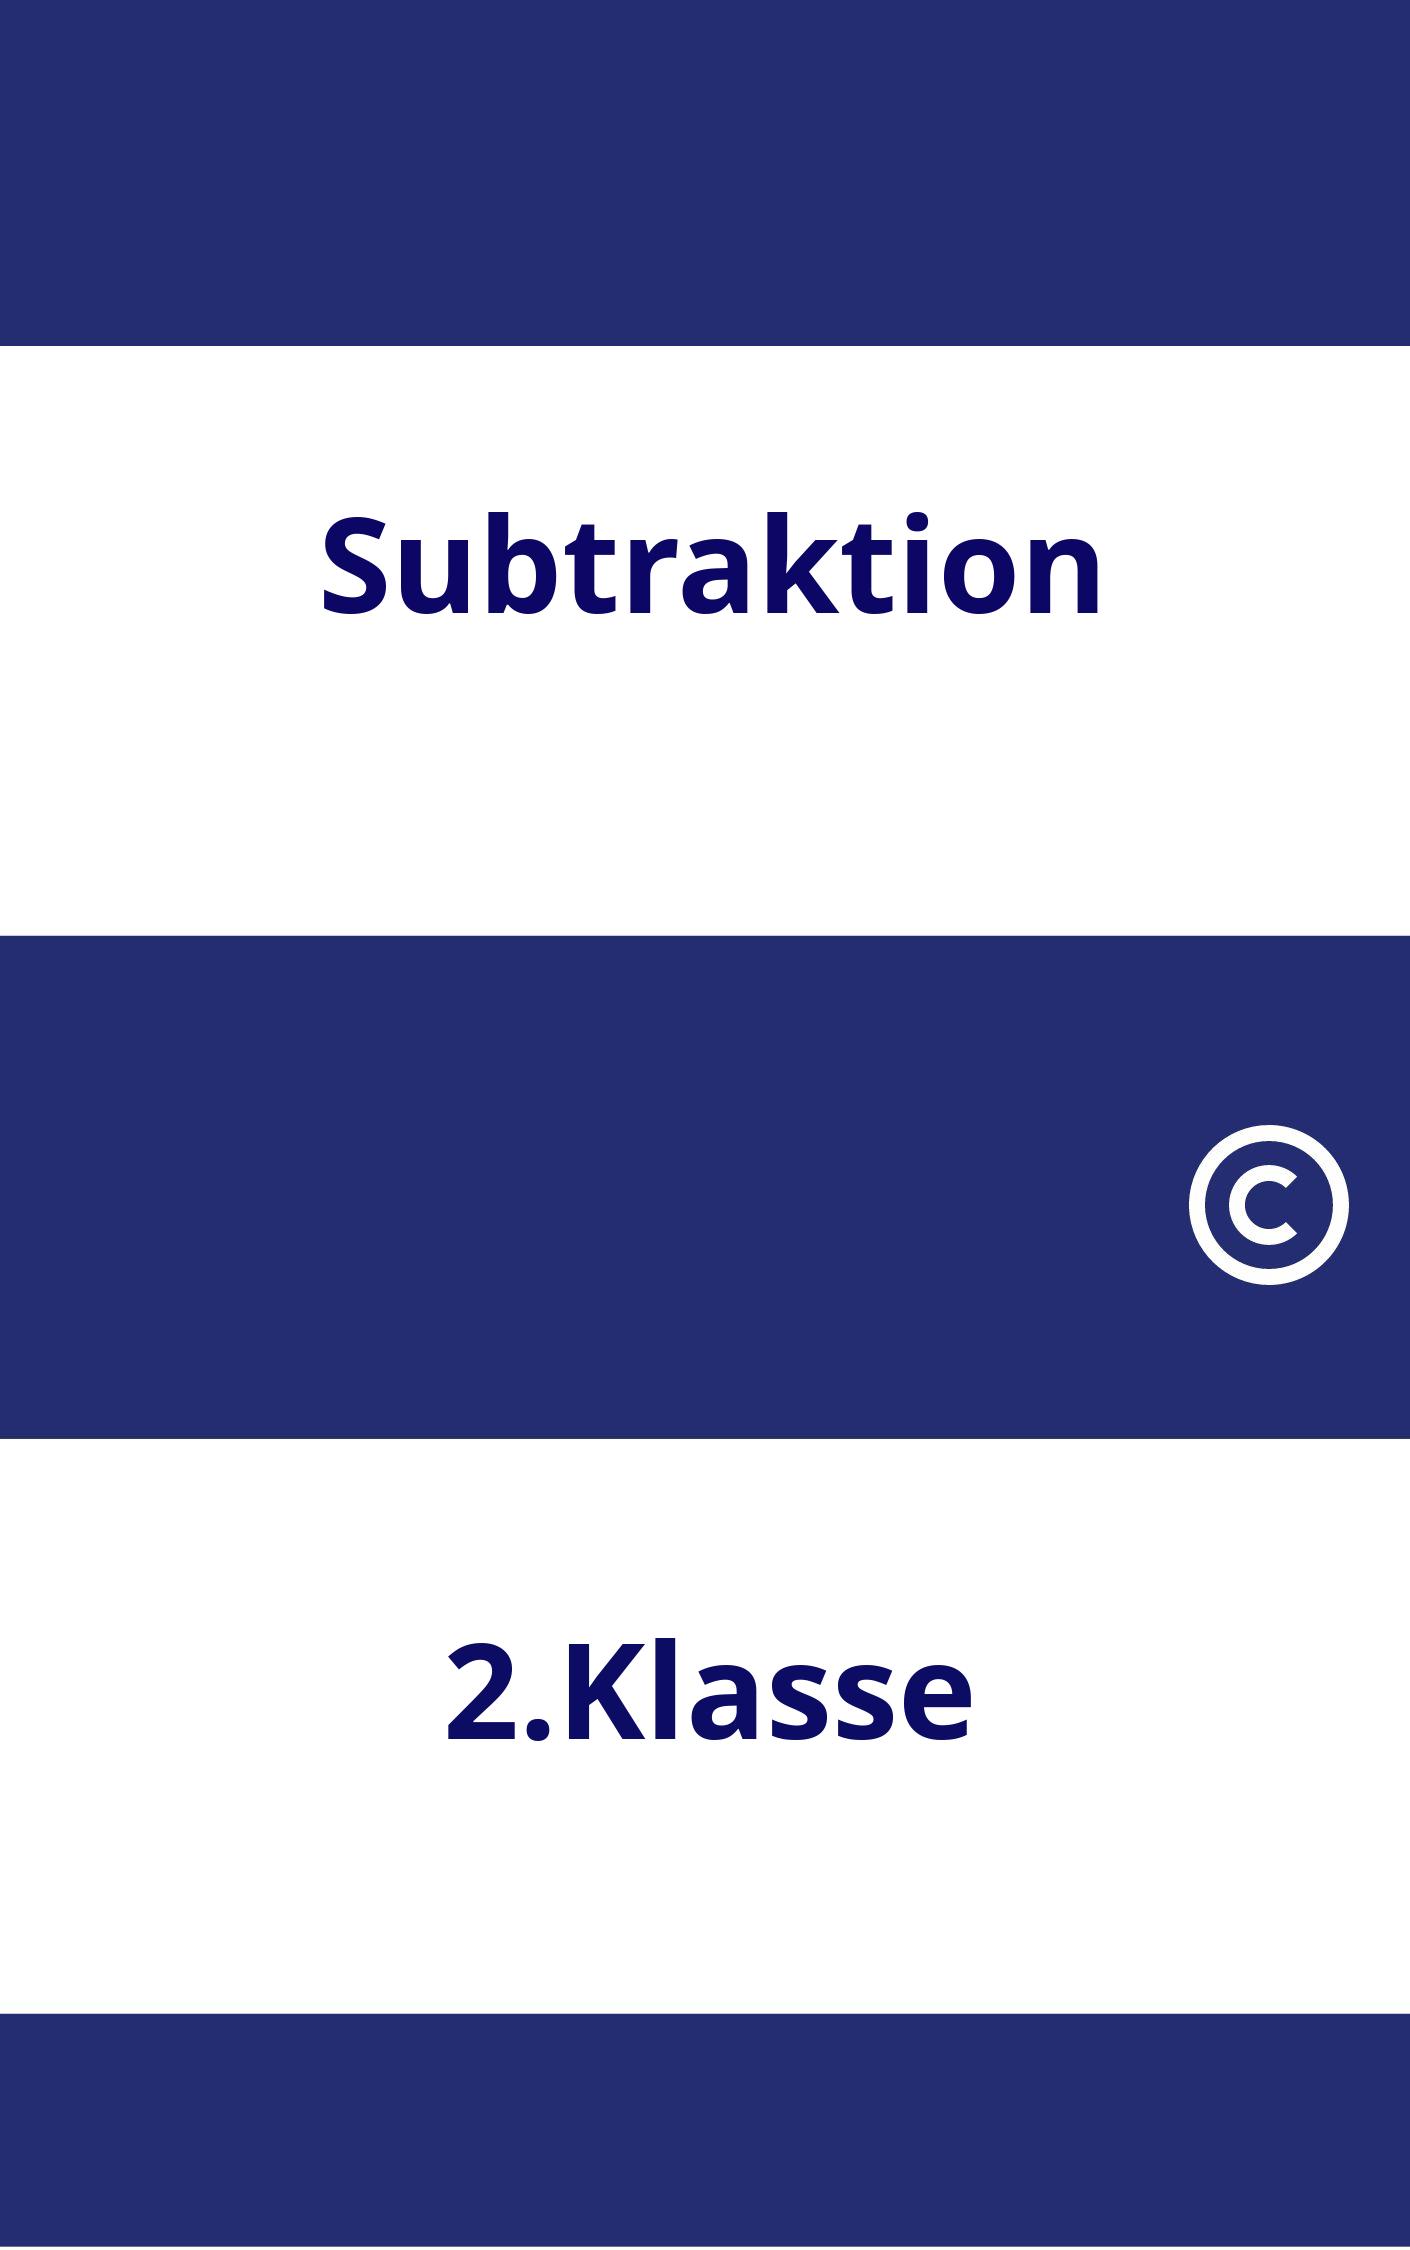 Subtraktion 2.Klasse Arbeitsblätter PDF